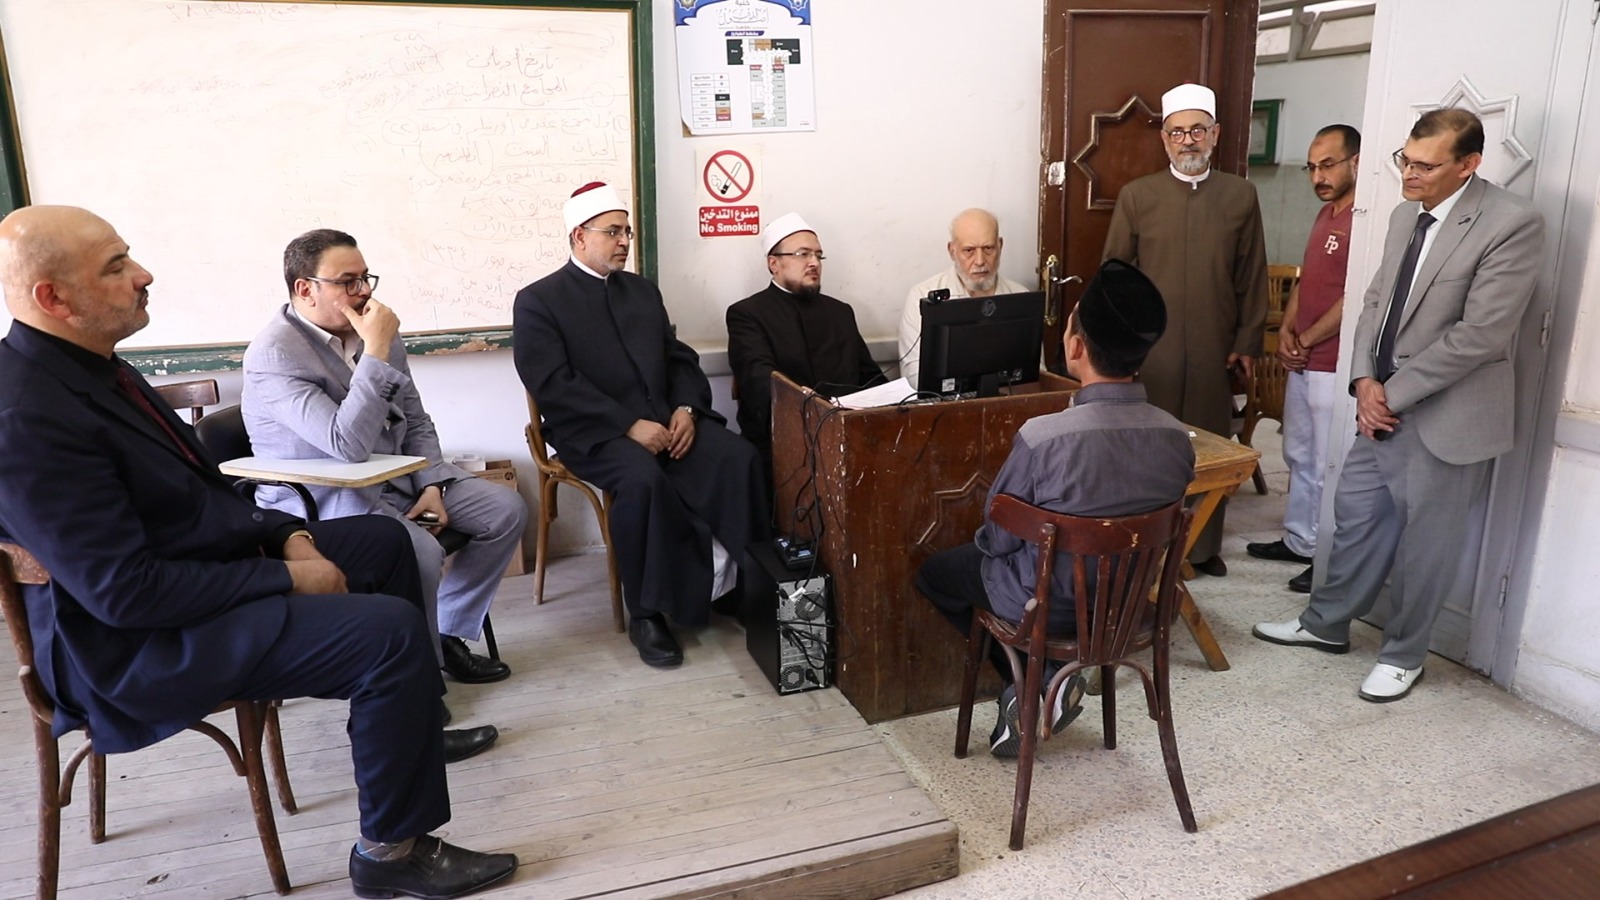 رئيس جامعة الأزهر يتفقد  الامتحانات الشفهية لطلاب أصول الدين بالدَّراسة وسط إشادة كبيرة من الطلاب مصريين ووافدين